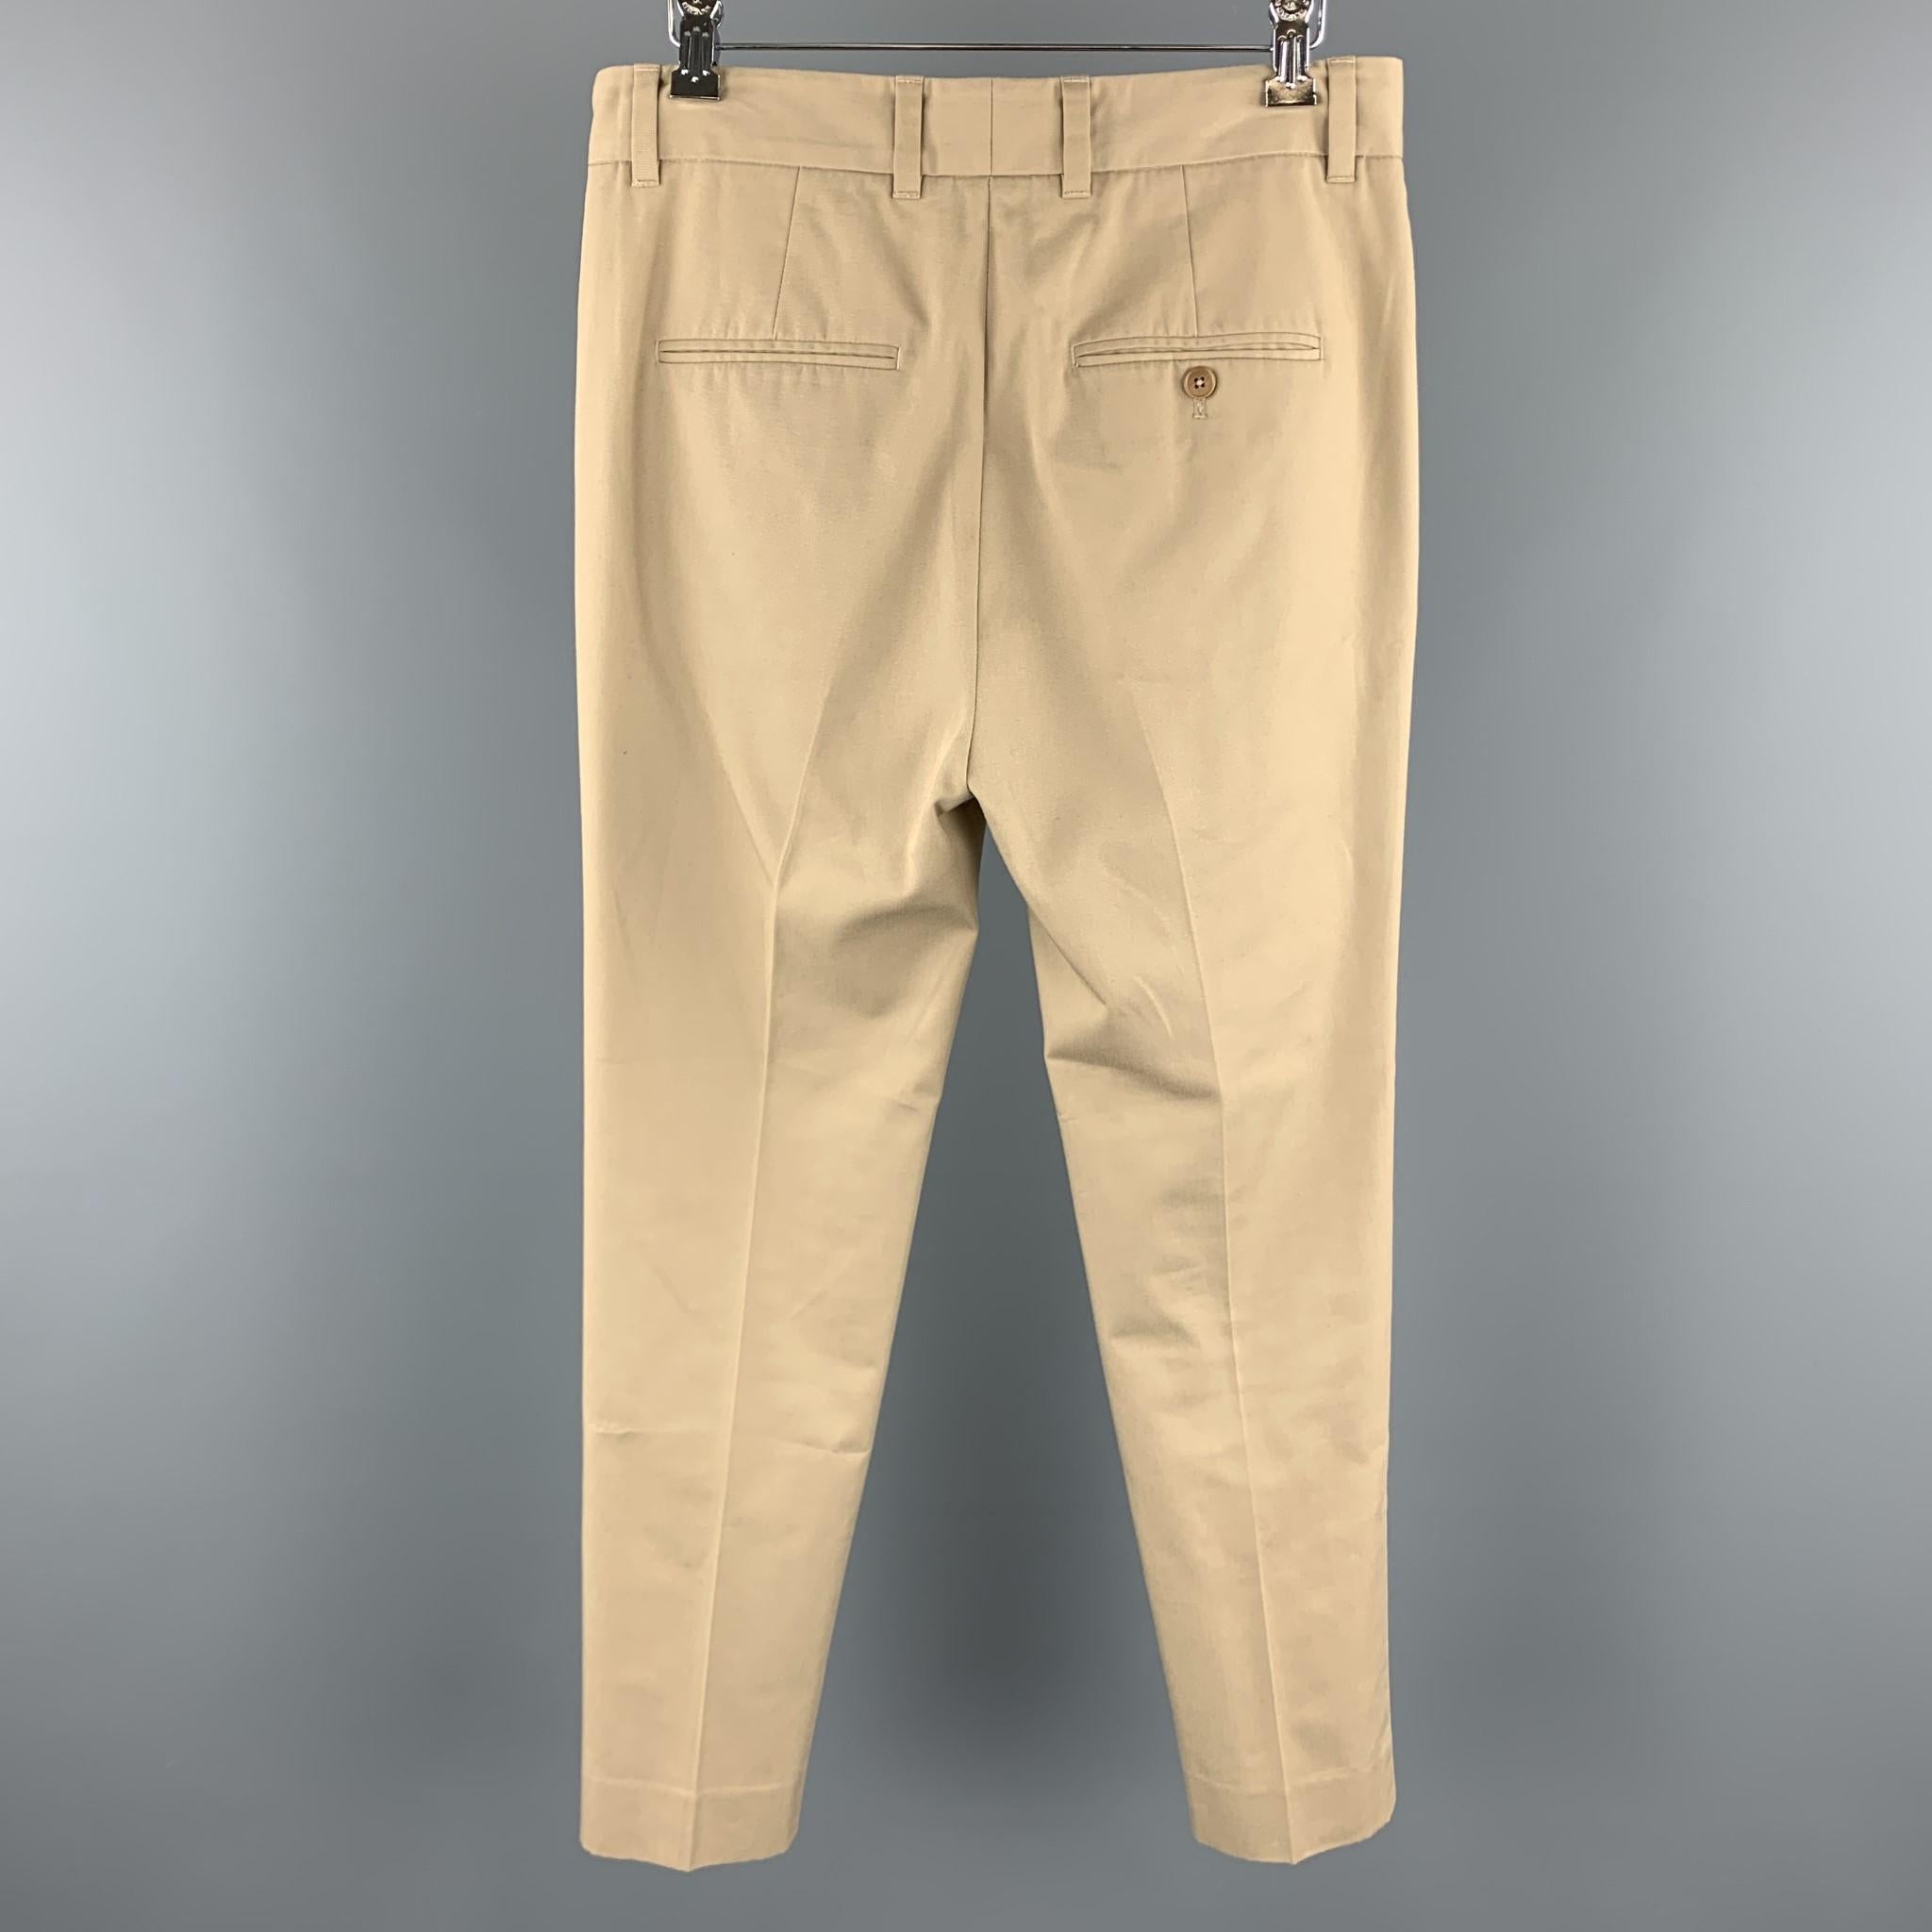 cotton polyester khaki pants